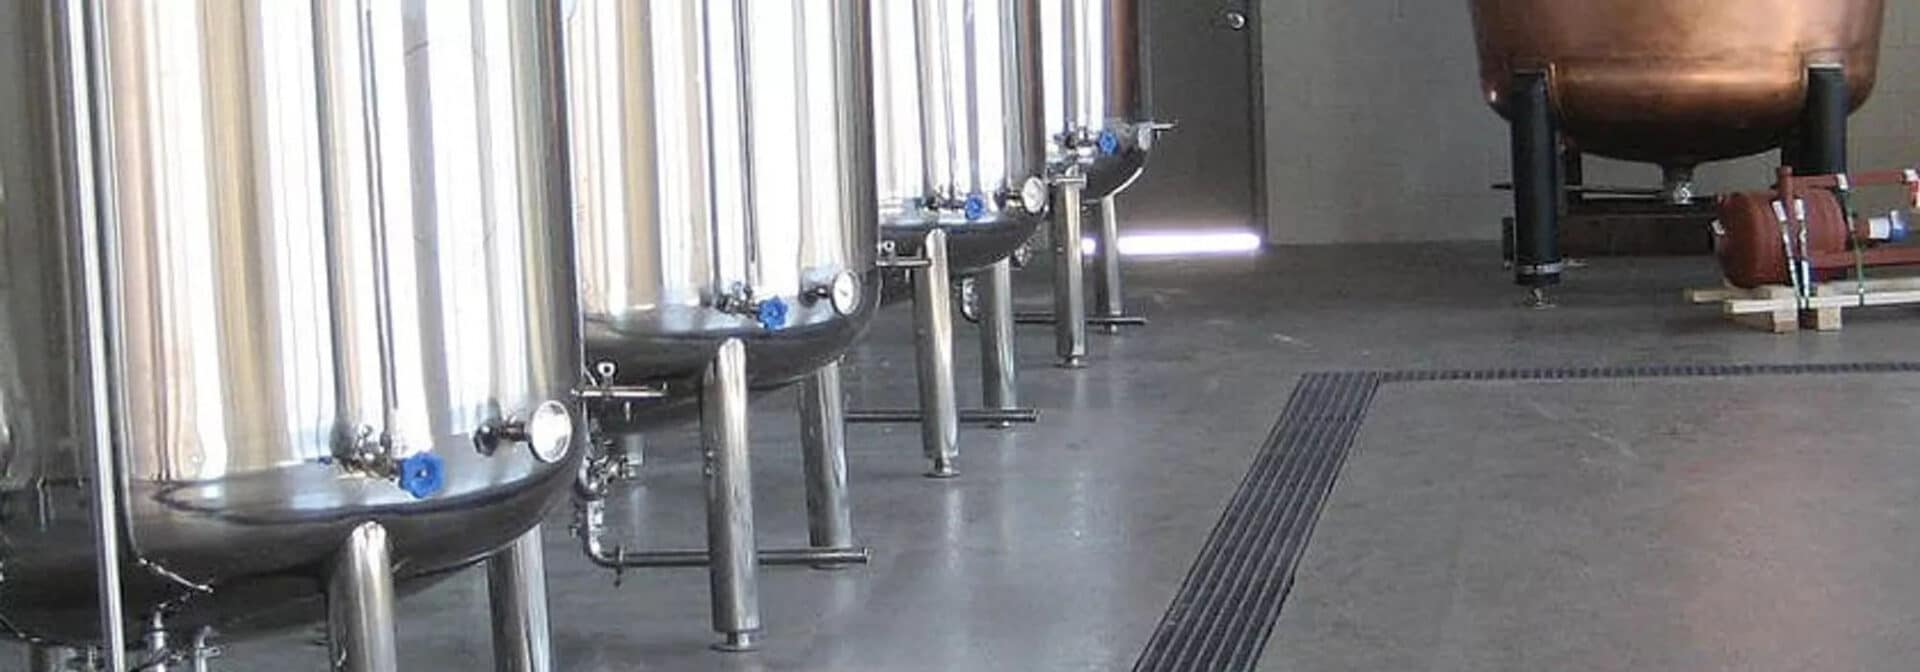 亚博网站有保障的啤酒厂或蒸馏厂的沟渠排水系统